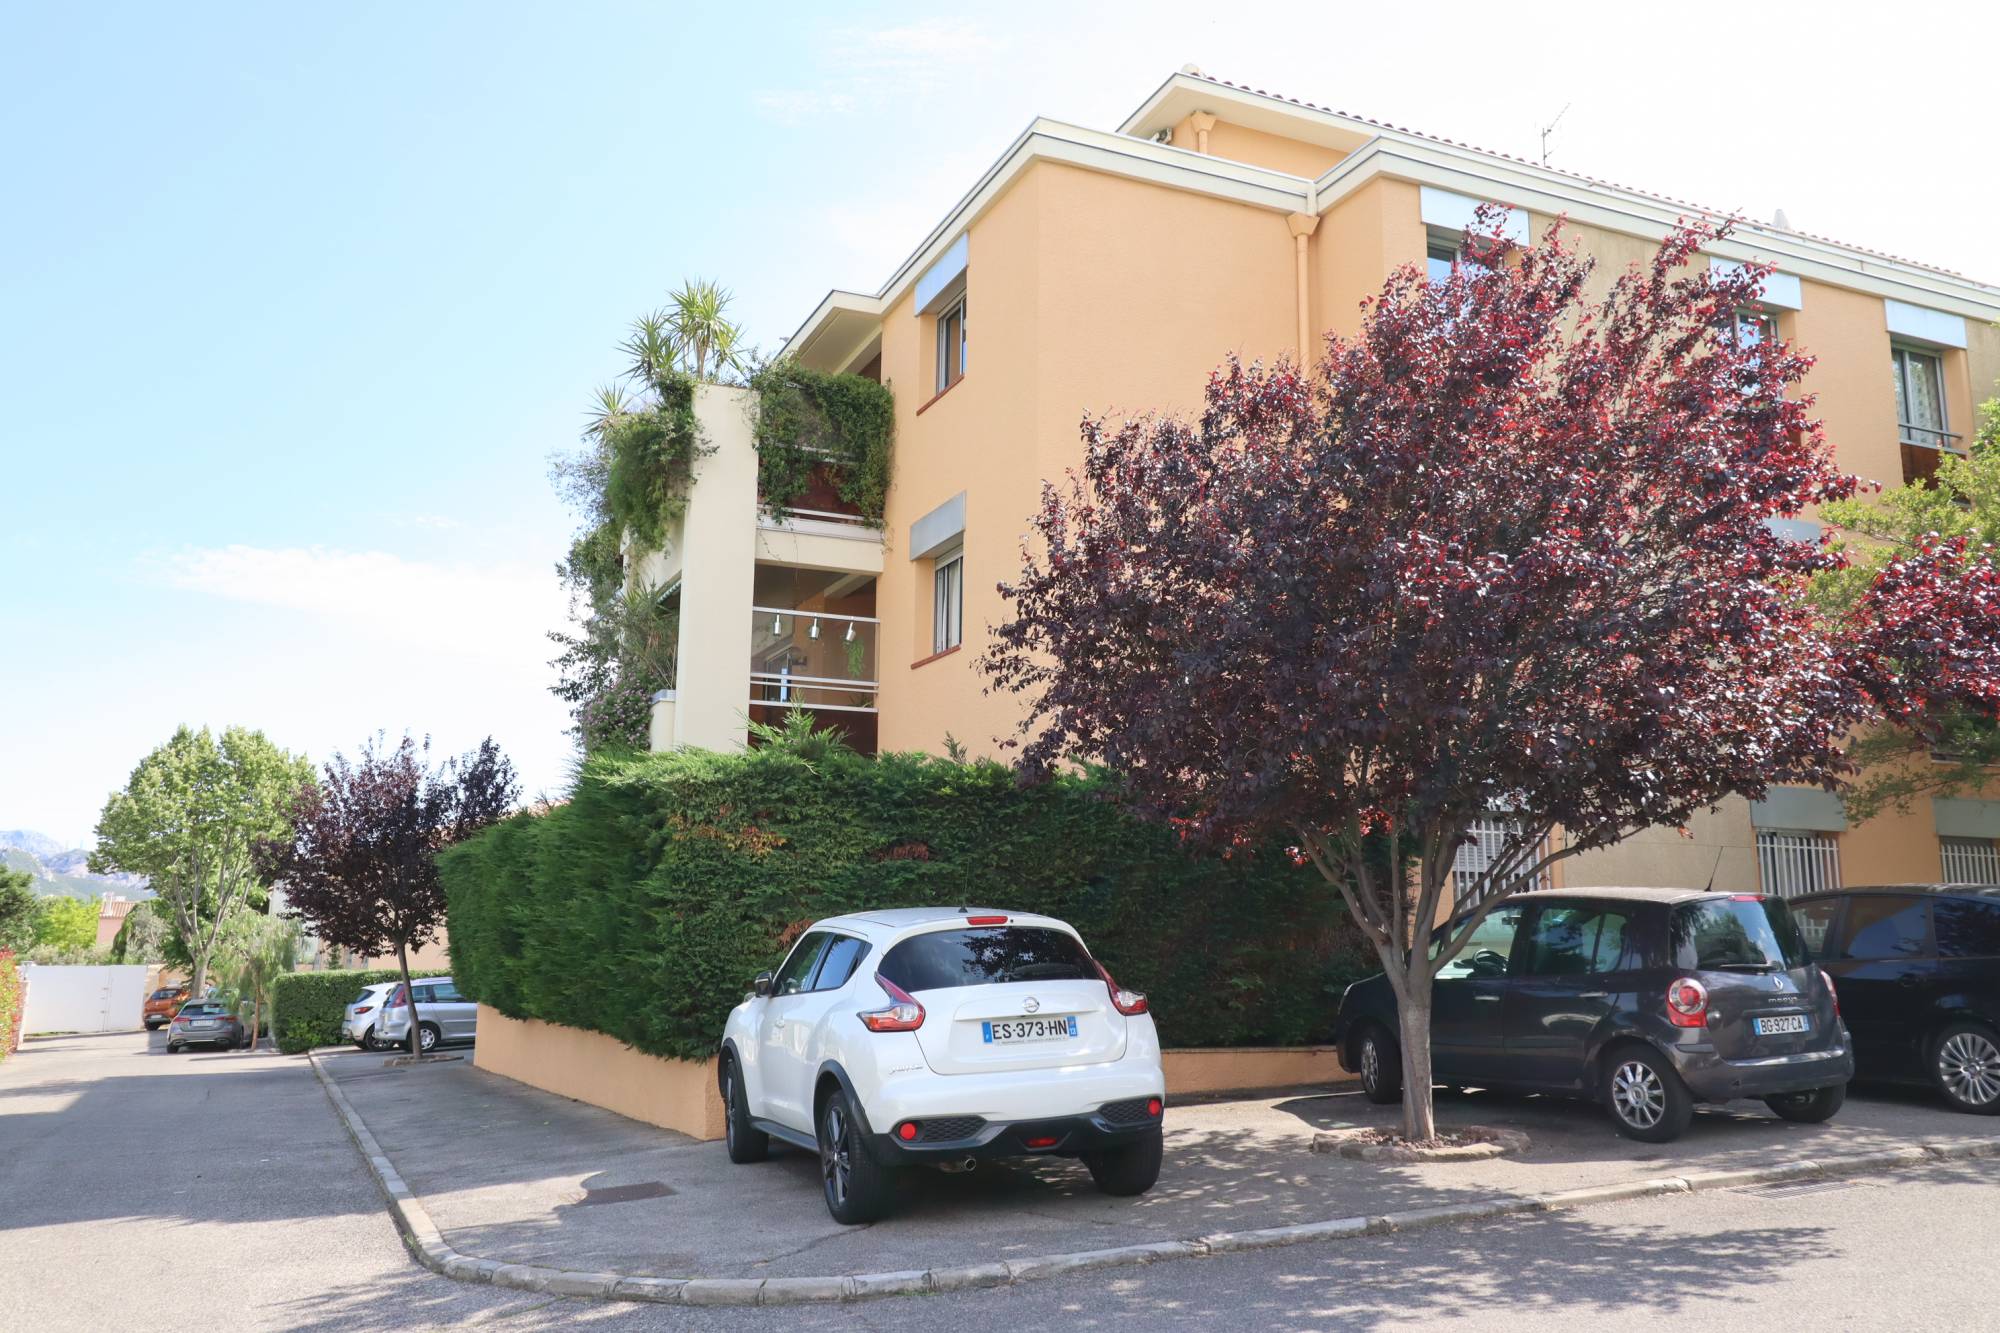 A vendre appartement 3 pièces en rez de jardin sur le village de Saint Barnabé 13012 Marseille 